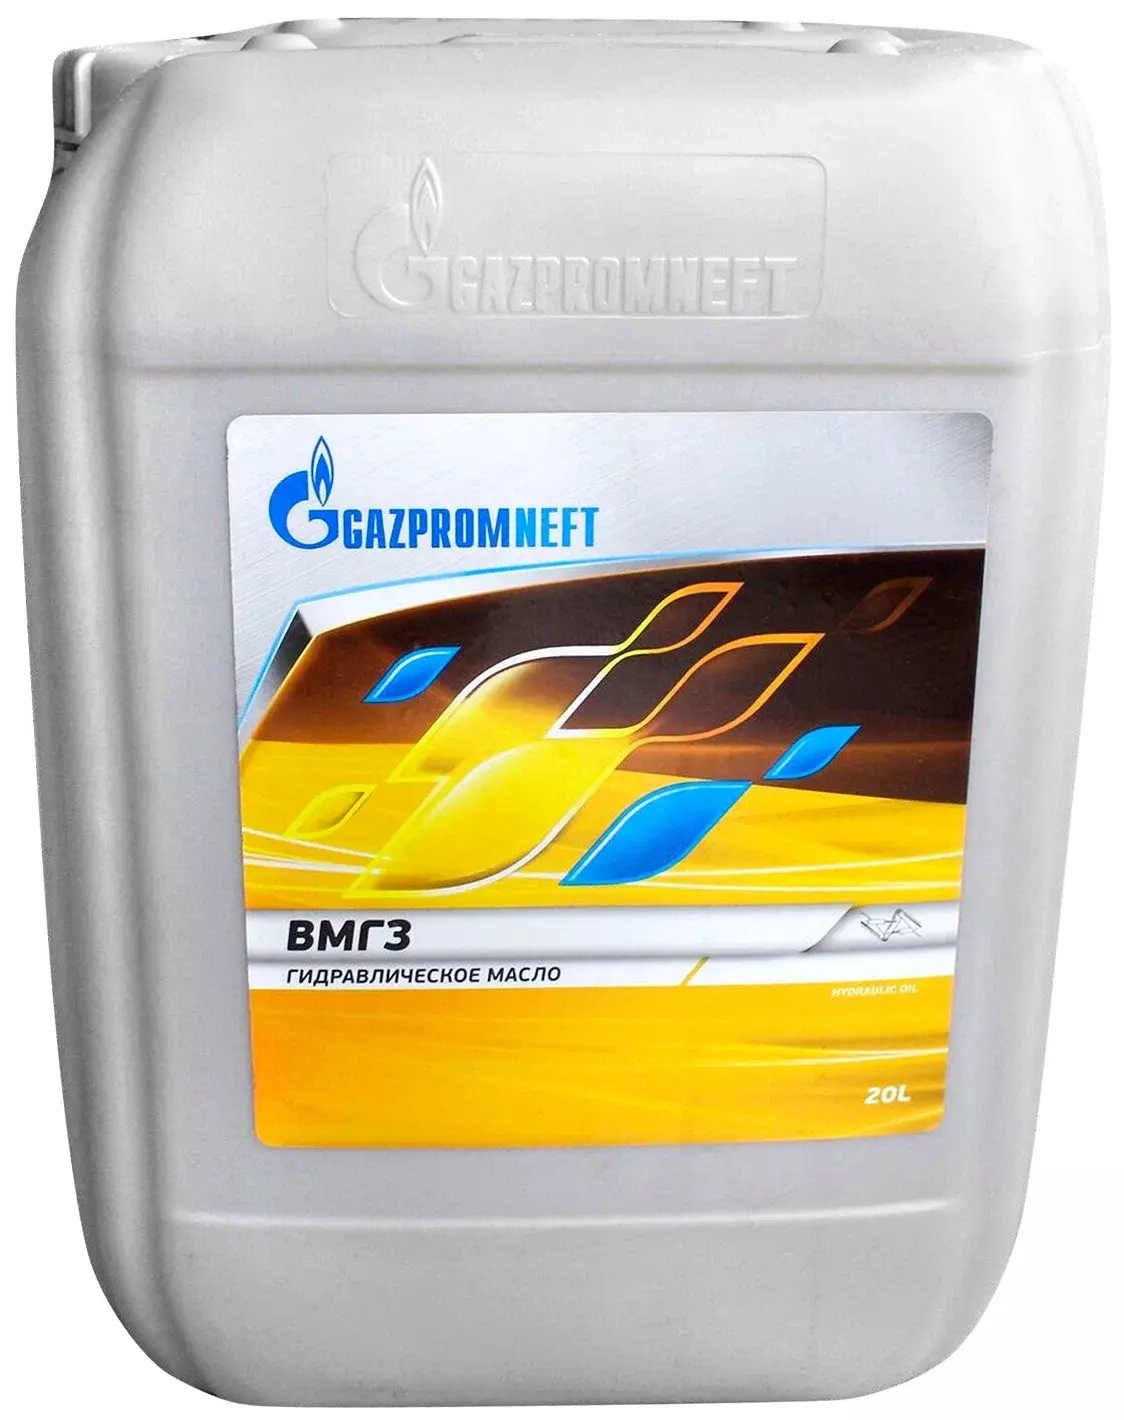 Масло гидравлическое Gazpromneft ВМГЗ 20 л